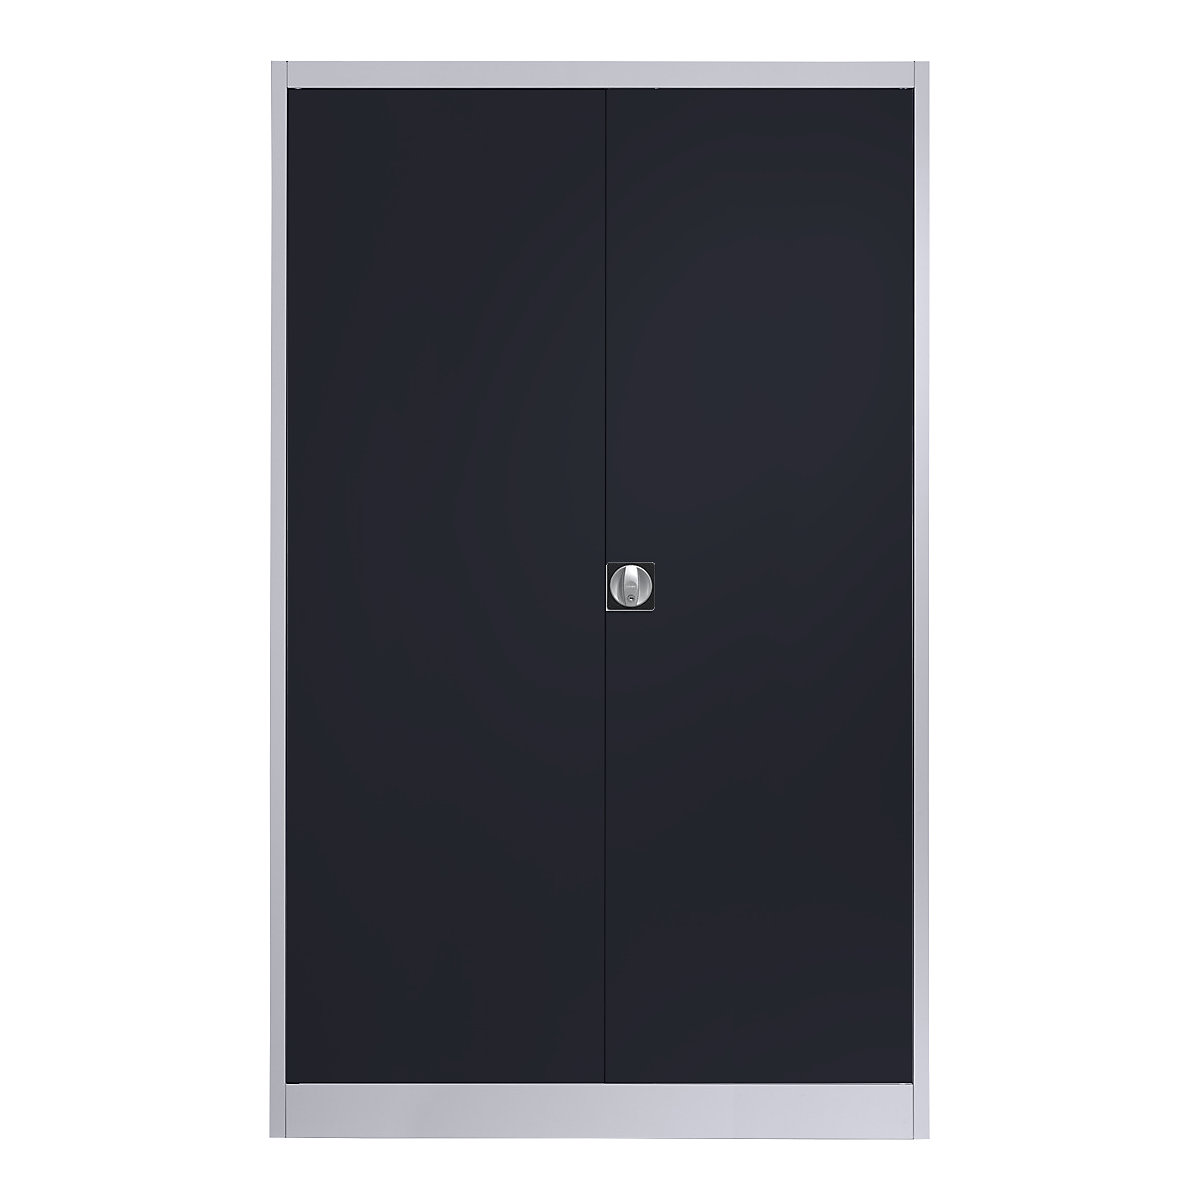 Čelični ormar s krilnim vratima – mauser, 4 police, širina 1200 mm, u bijeloj aluminij / antracit sivoj boji, vanjska dubina 500 mm-8